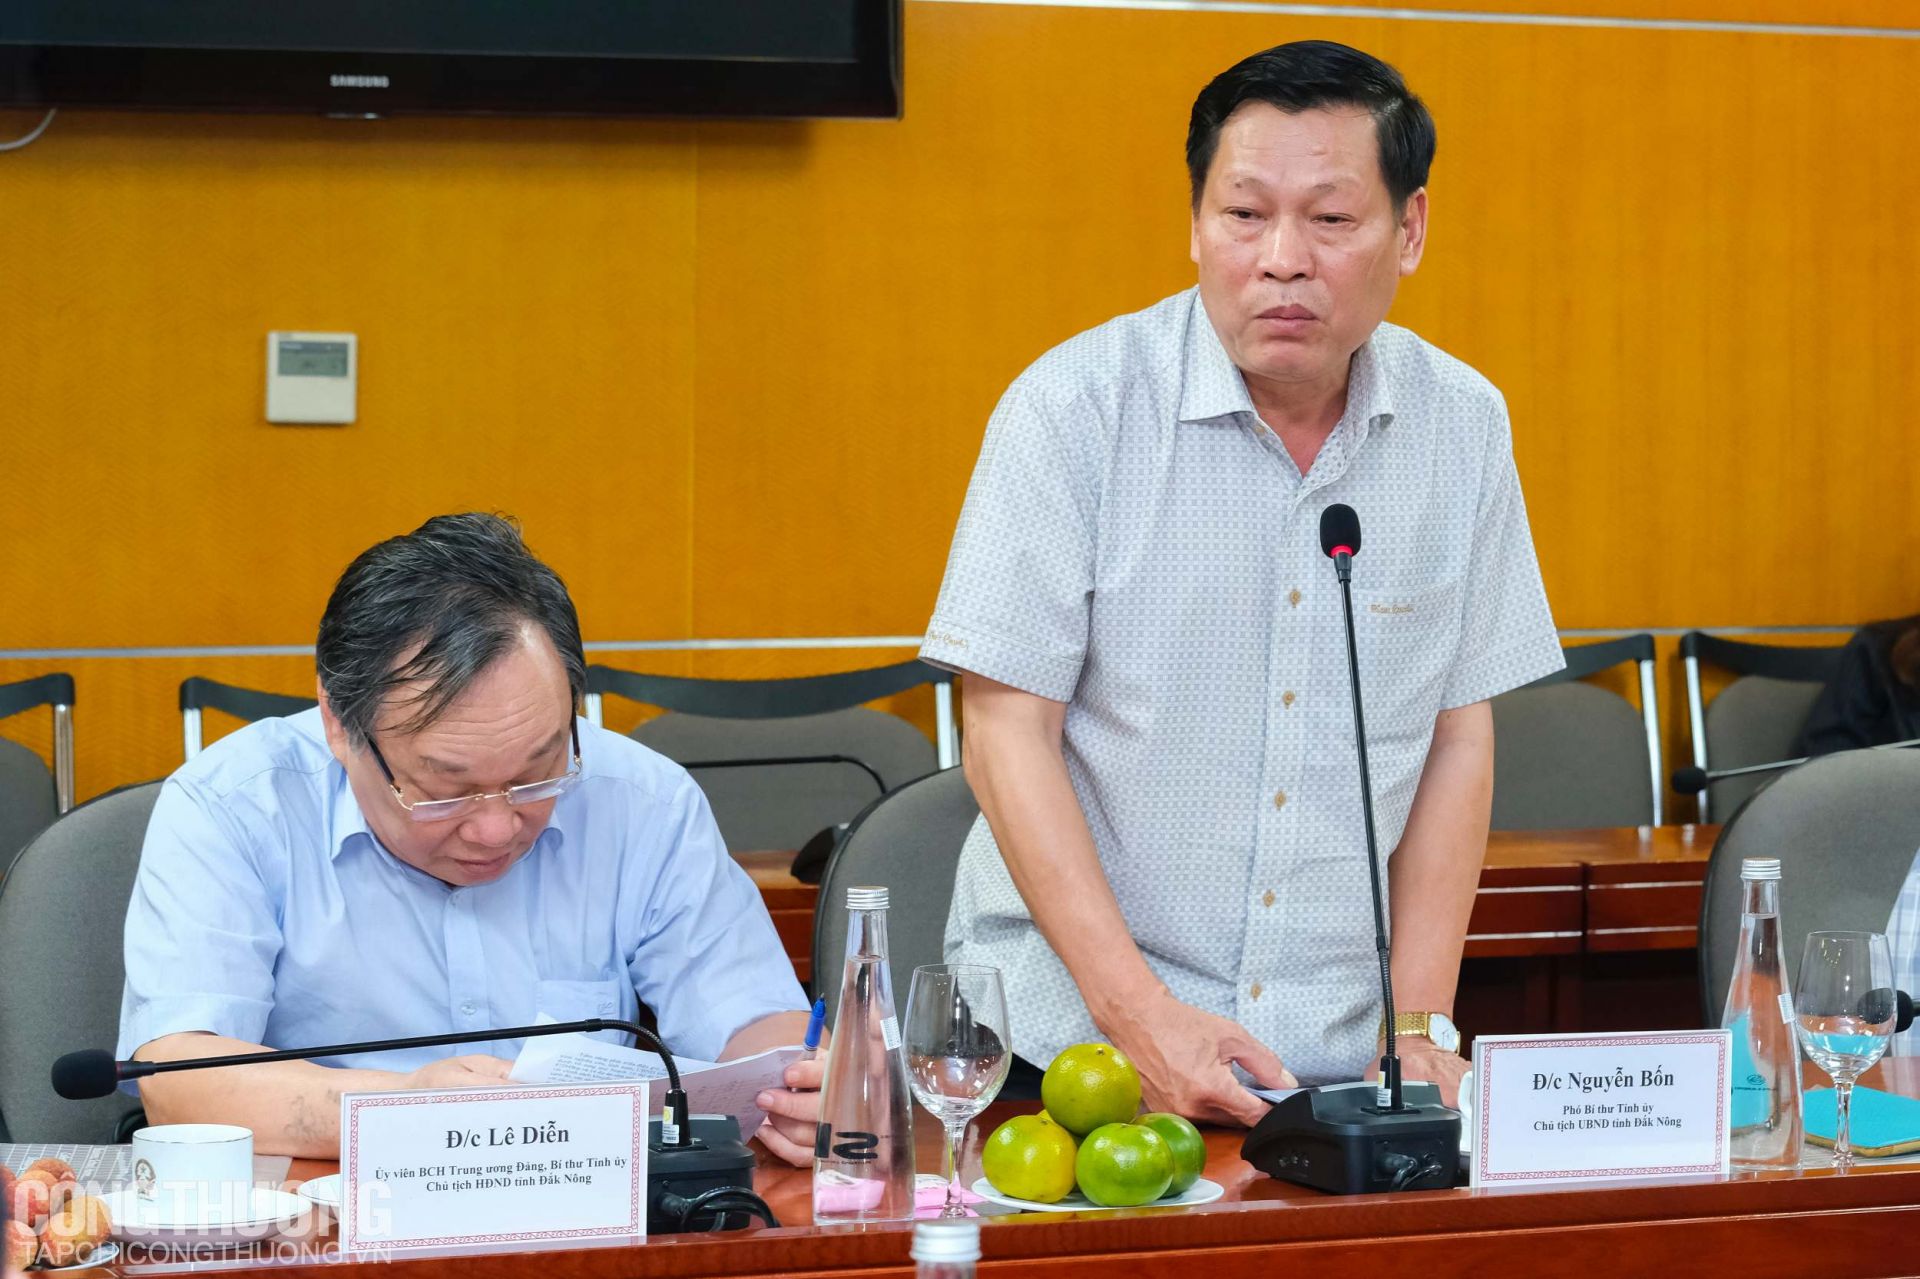 Phó Bí thư Tỉnh ủy, Chủ tịch UBND tỉnh Đắk Nông Nguyễn Bốn chia sẻ tiềm năng phát triển điện gió, điện mặt trời của địa phương là rất lớn